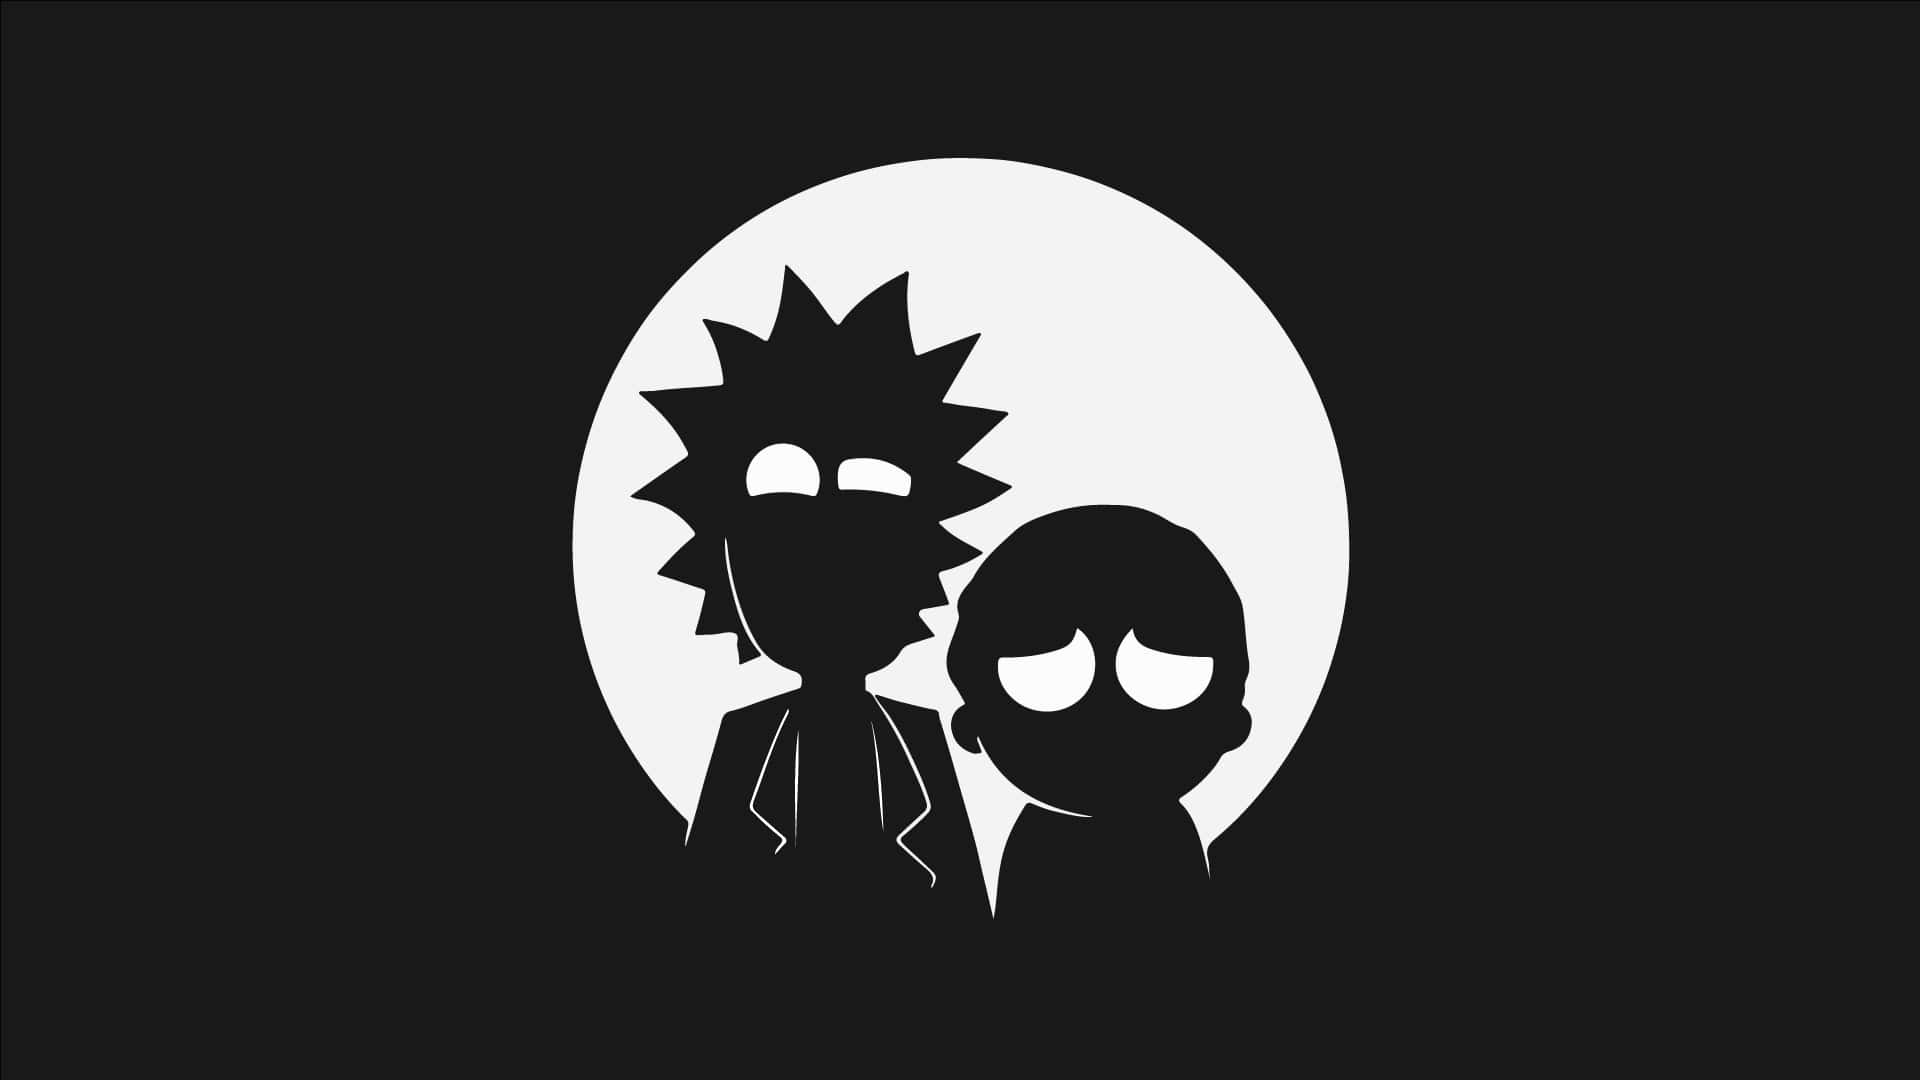 Rick And Morty - Rick And Morty - Rick And Morty - Rick And Morty - Rick And Mort Wallpaper